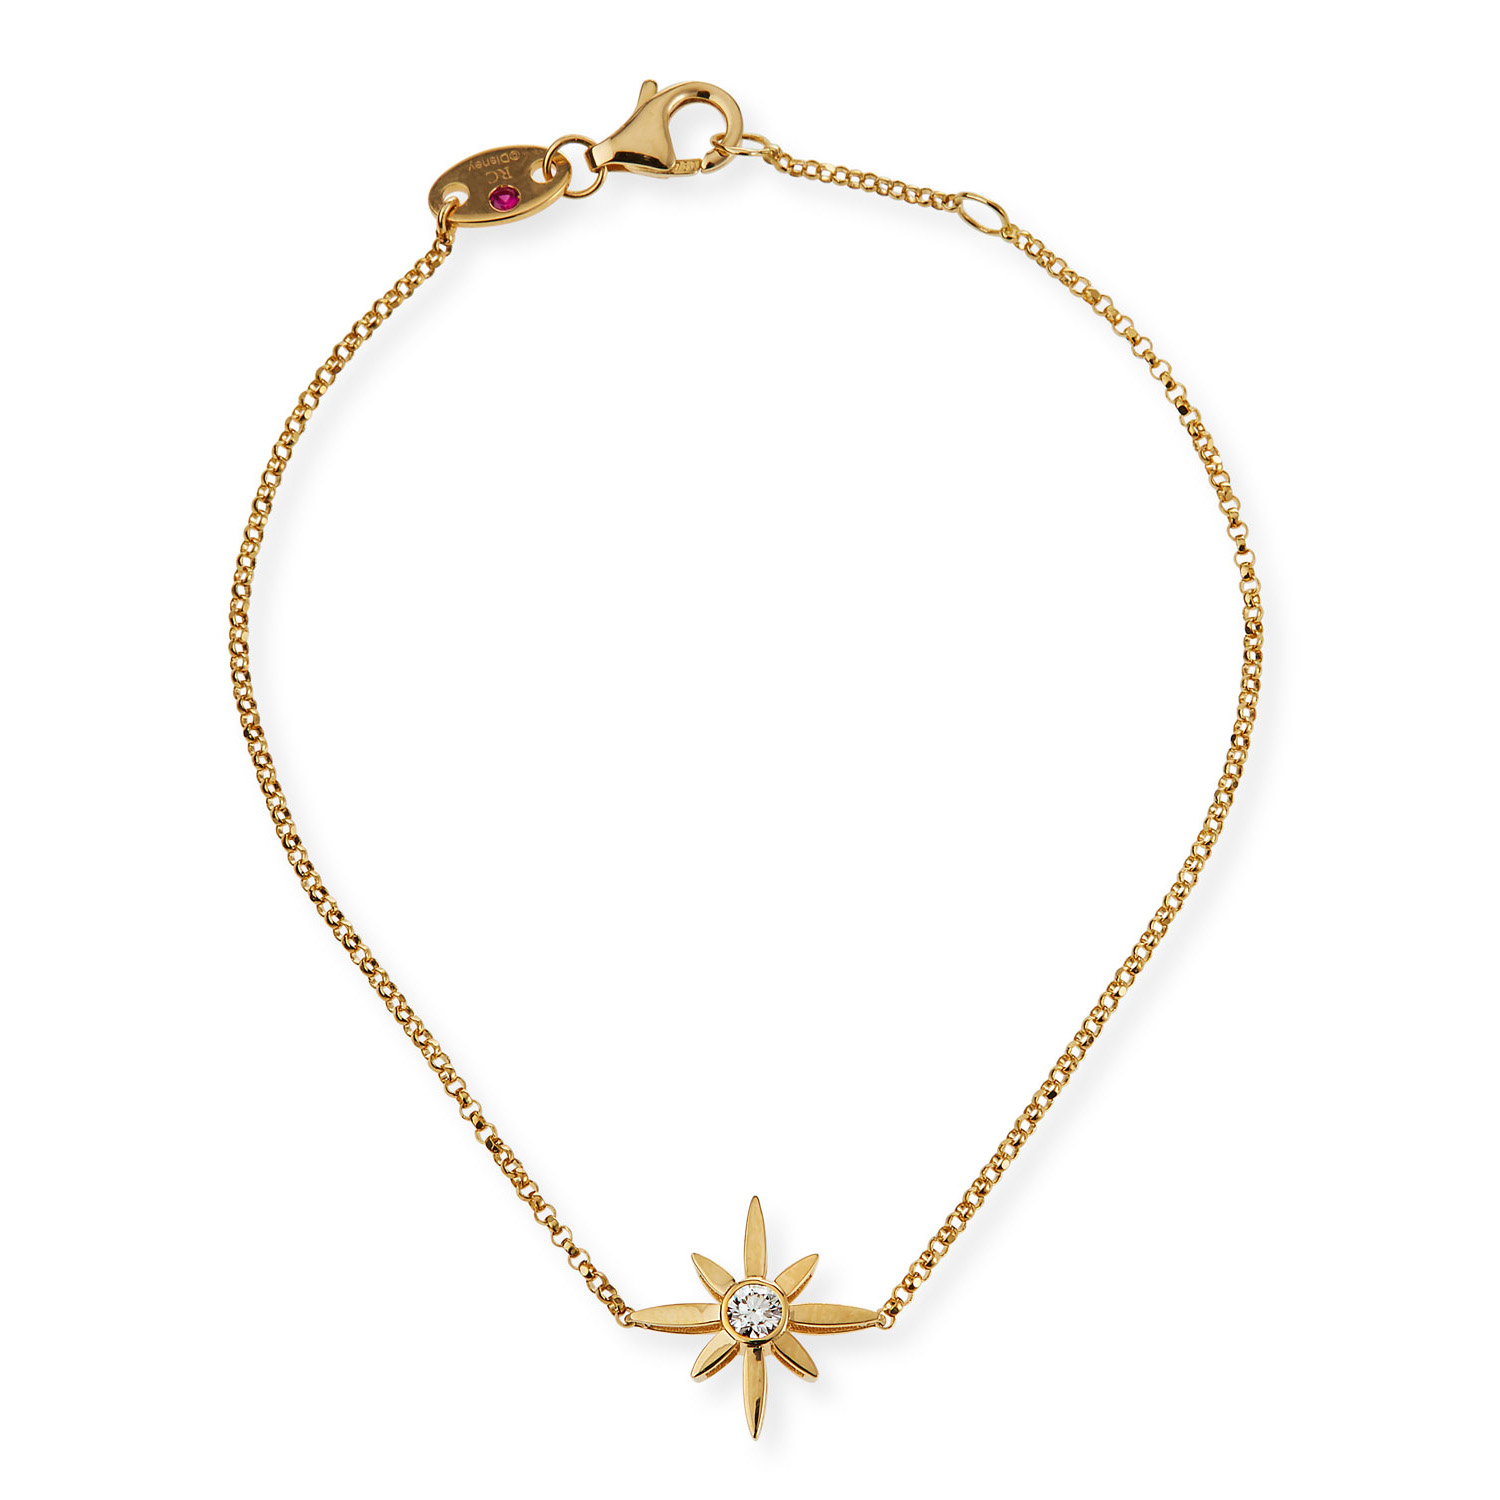 Bracciale in argento con stella personalizzata per gioielli OEM / ODM all'ingrosso con design vermeil in oro 18 carati e crea i tuoi gioielli